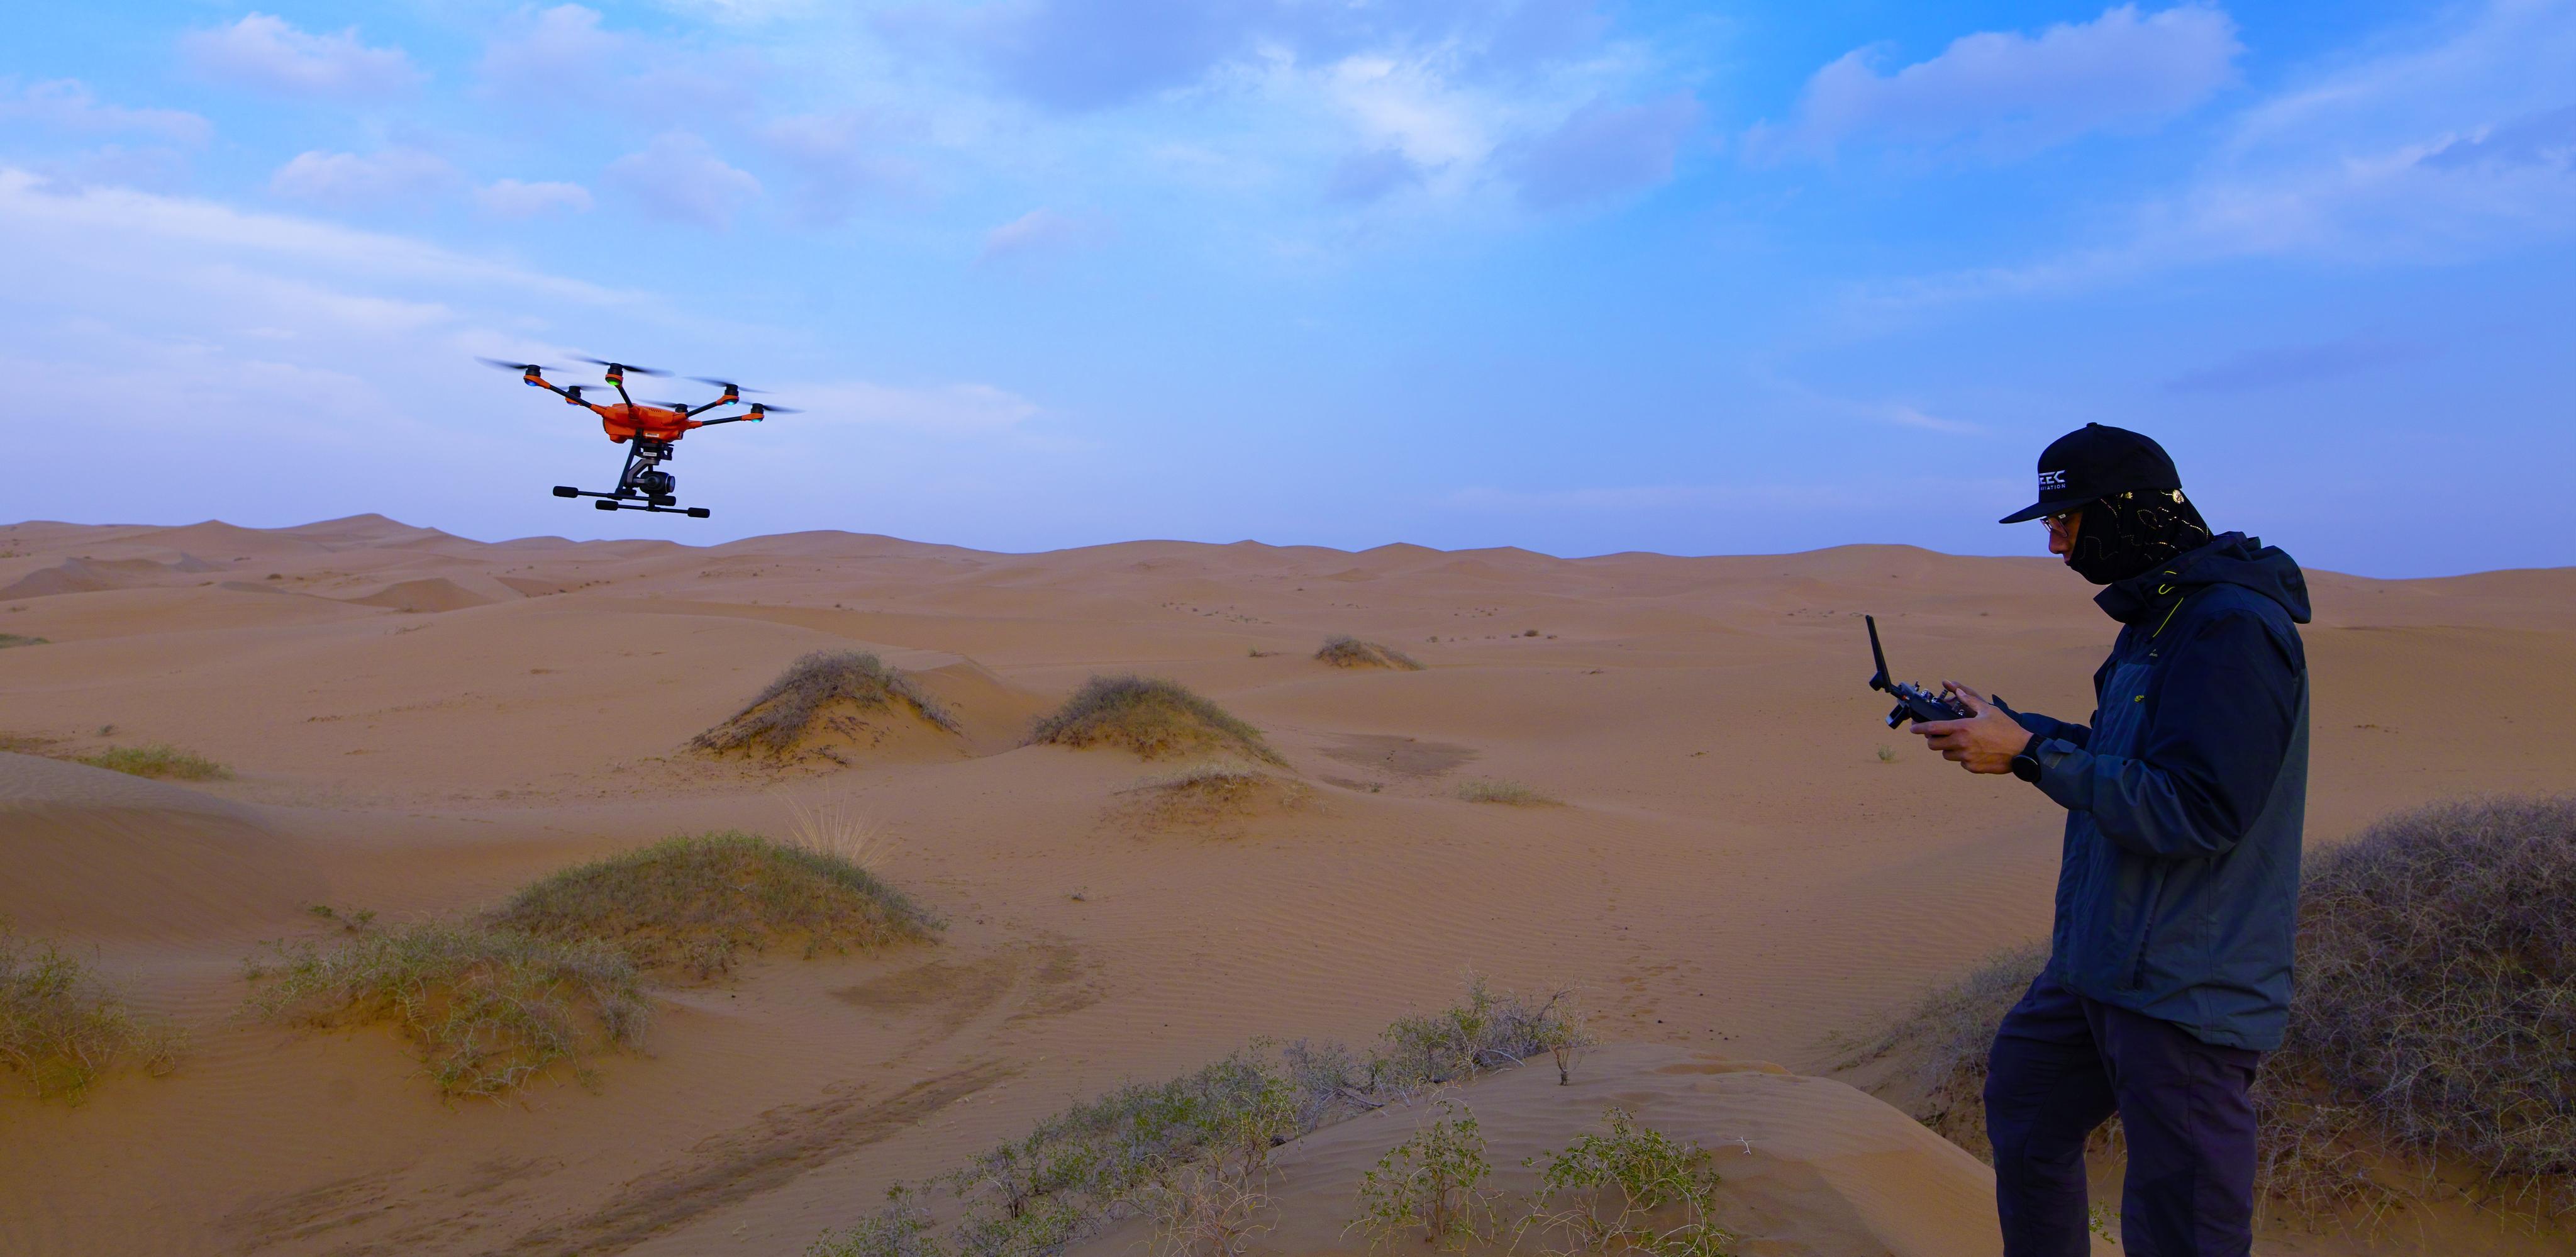 我在沙漠飞无人机